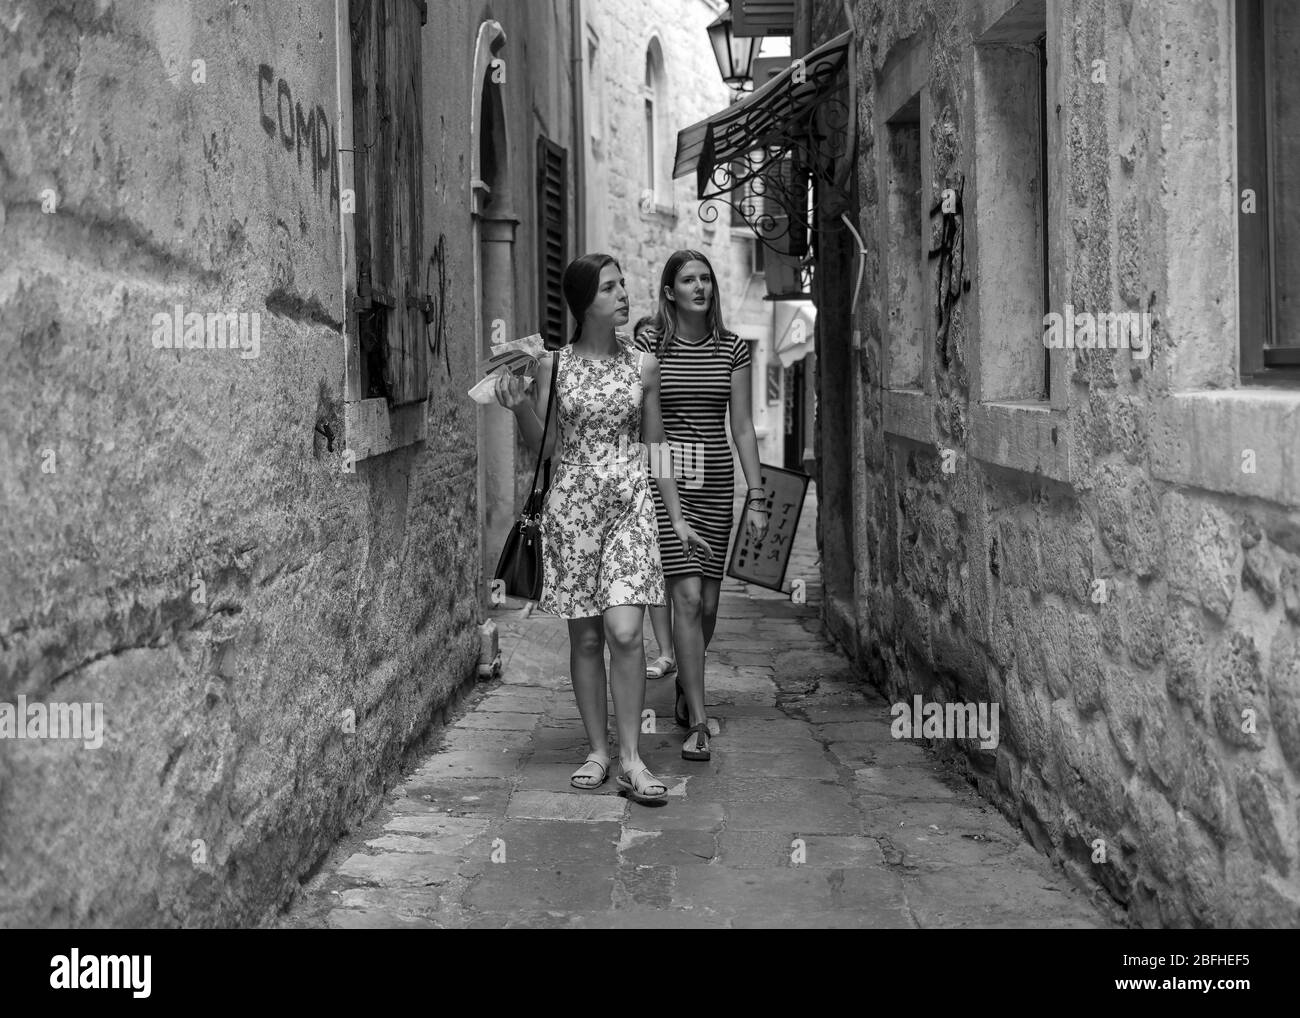 Monténégro, 17 septembre 2019 : deux jeunes femmes marchant et s'empaquent dans la rue pavée étroite de la vieille ville de Kotor Banque D'Images